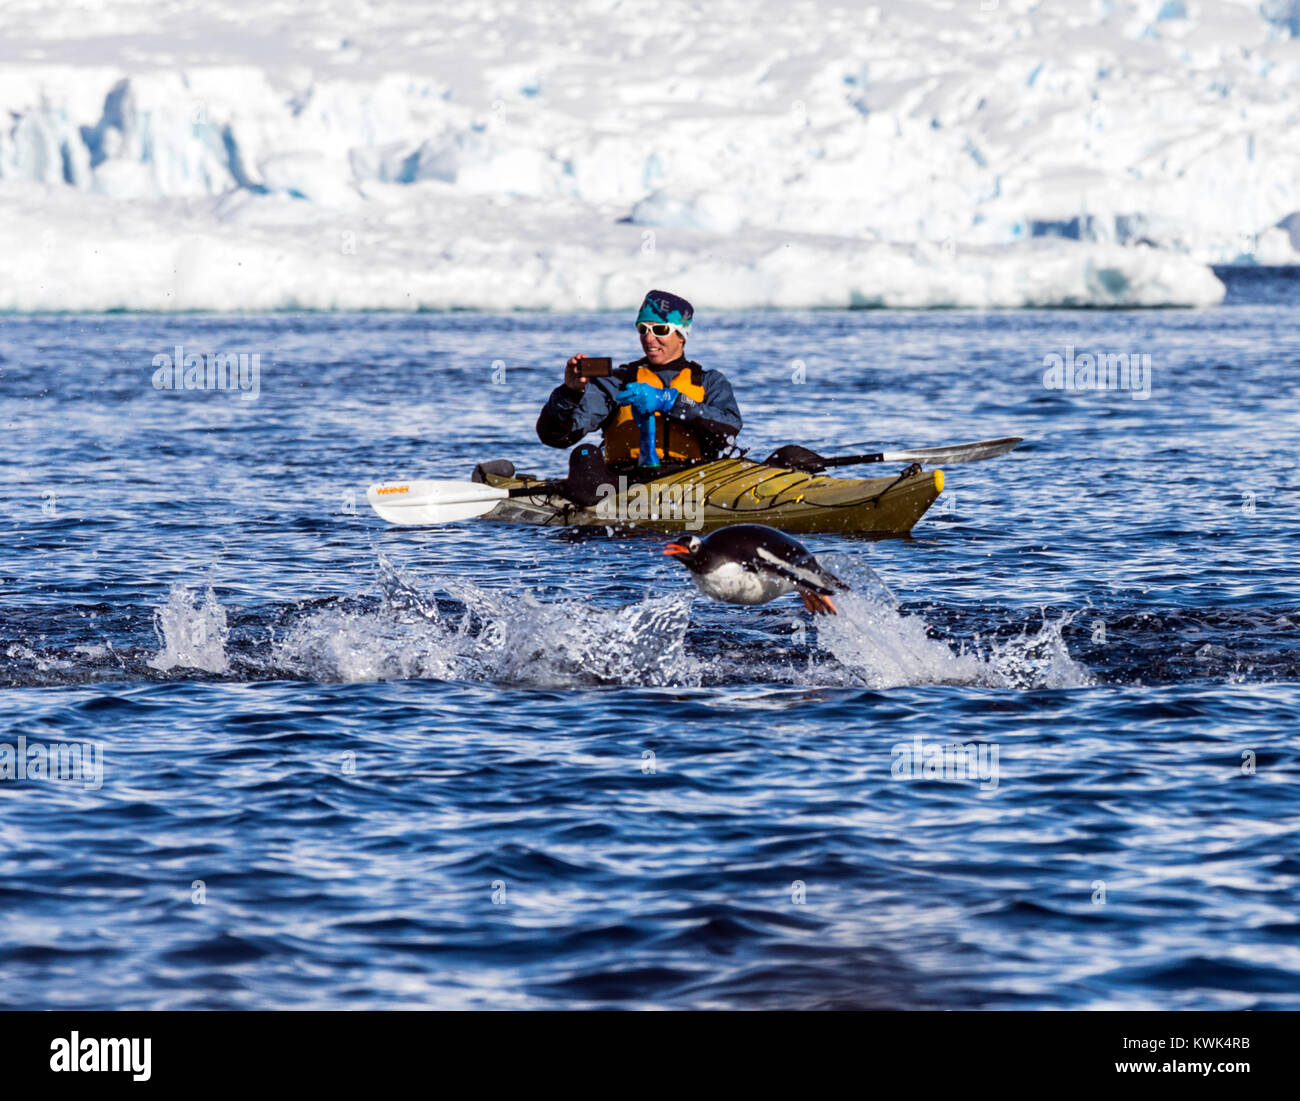 Kayakiste de mer à longue queue photos manchots Pygoscelis papua ; natation ; RongÃ© ; l'île de la péninsule Antarctique Arctowski ; Banque D'Images